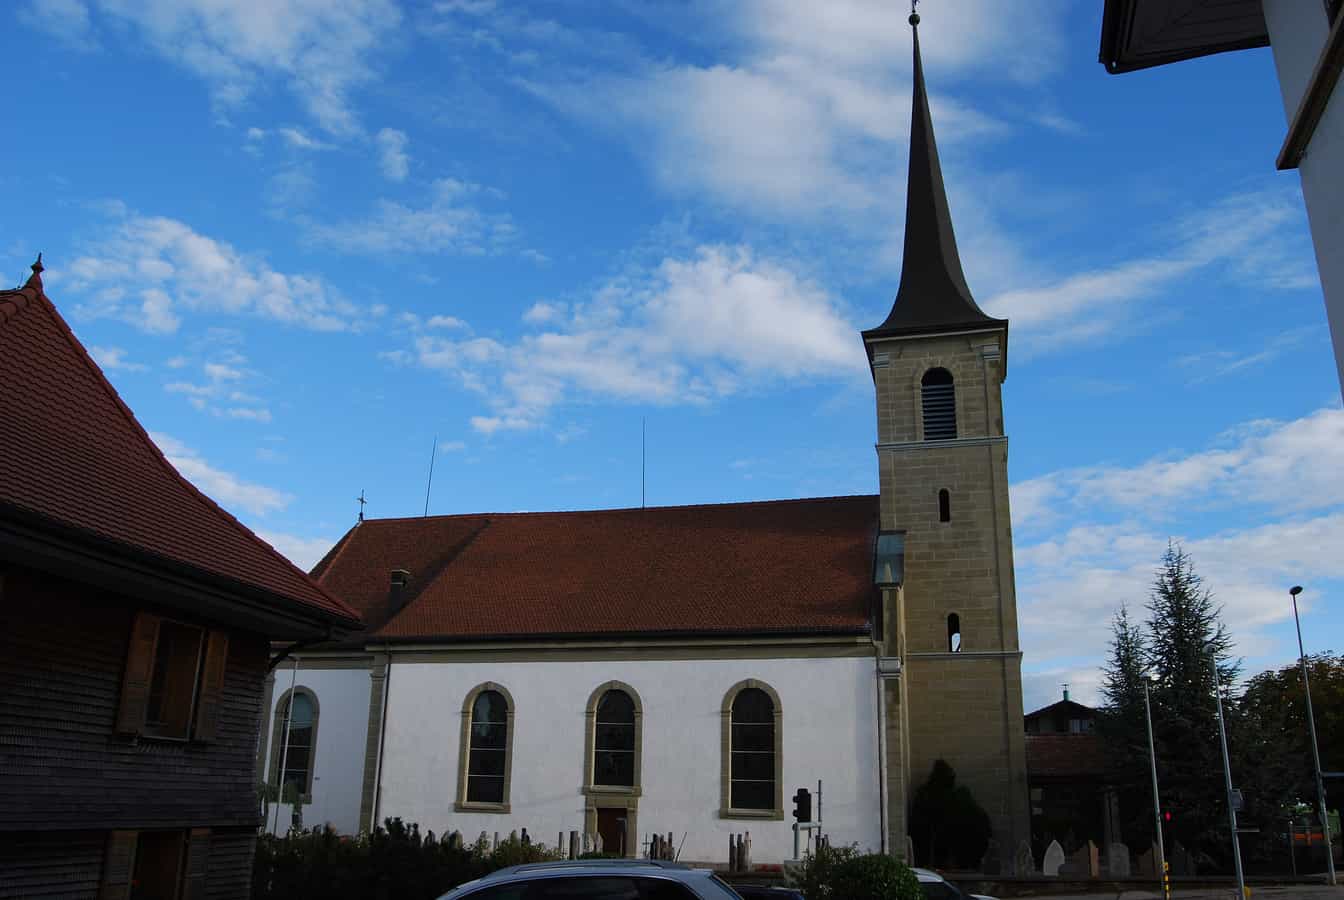 Katholische Kirche von Neyruz, Kanton Freiburg, Schweiz